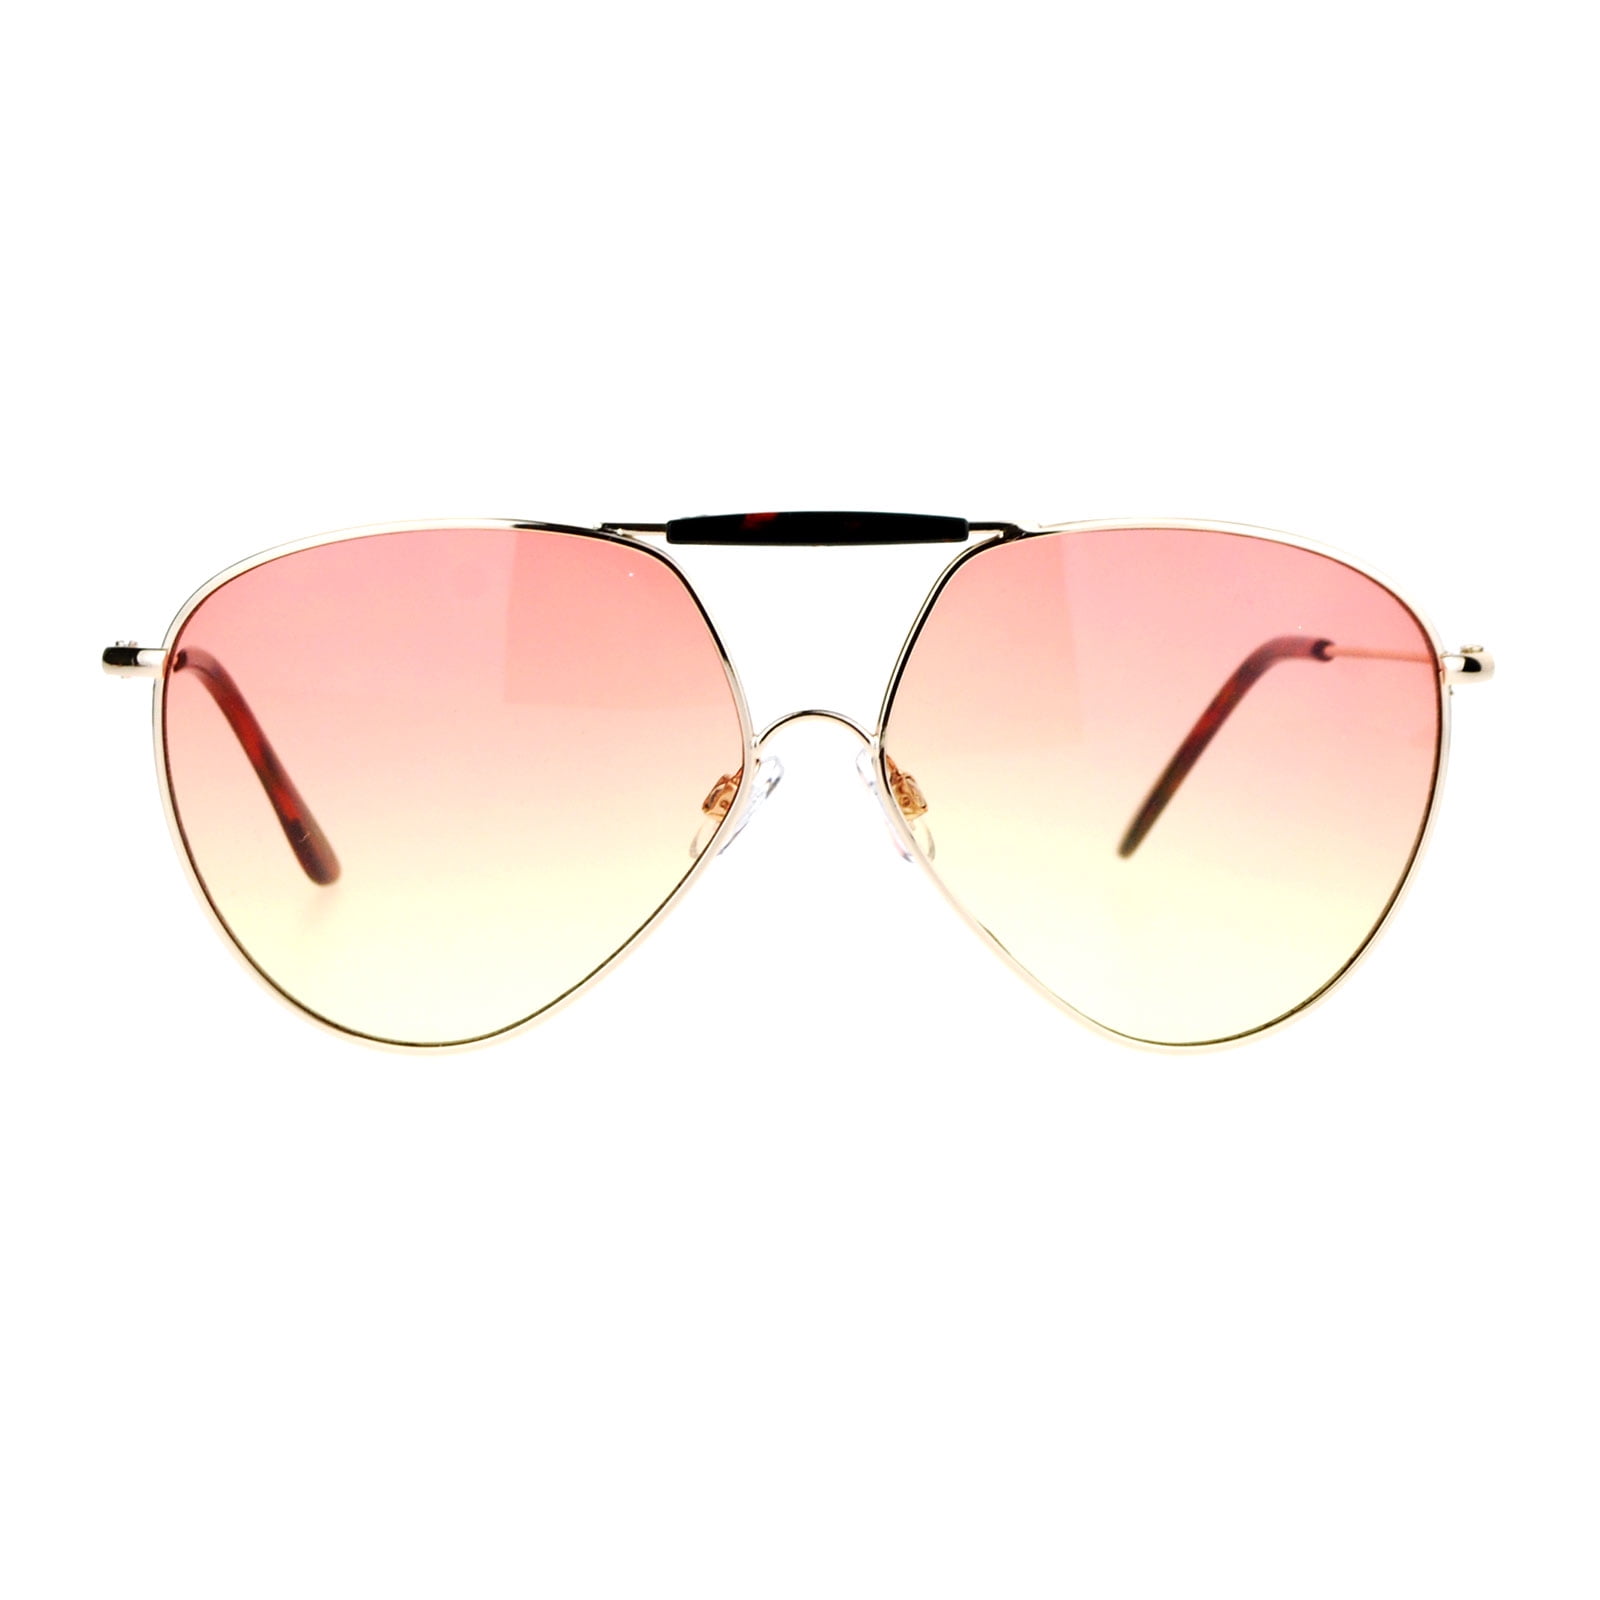 Sunglasses Ladies Mens Women's Pilot Coloured Translucent Oceanic Lens Brow Bar 